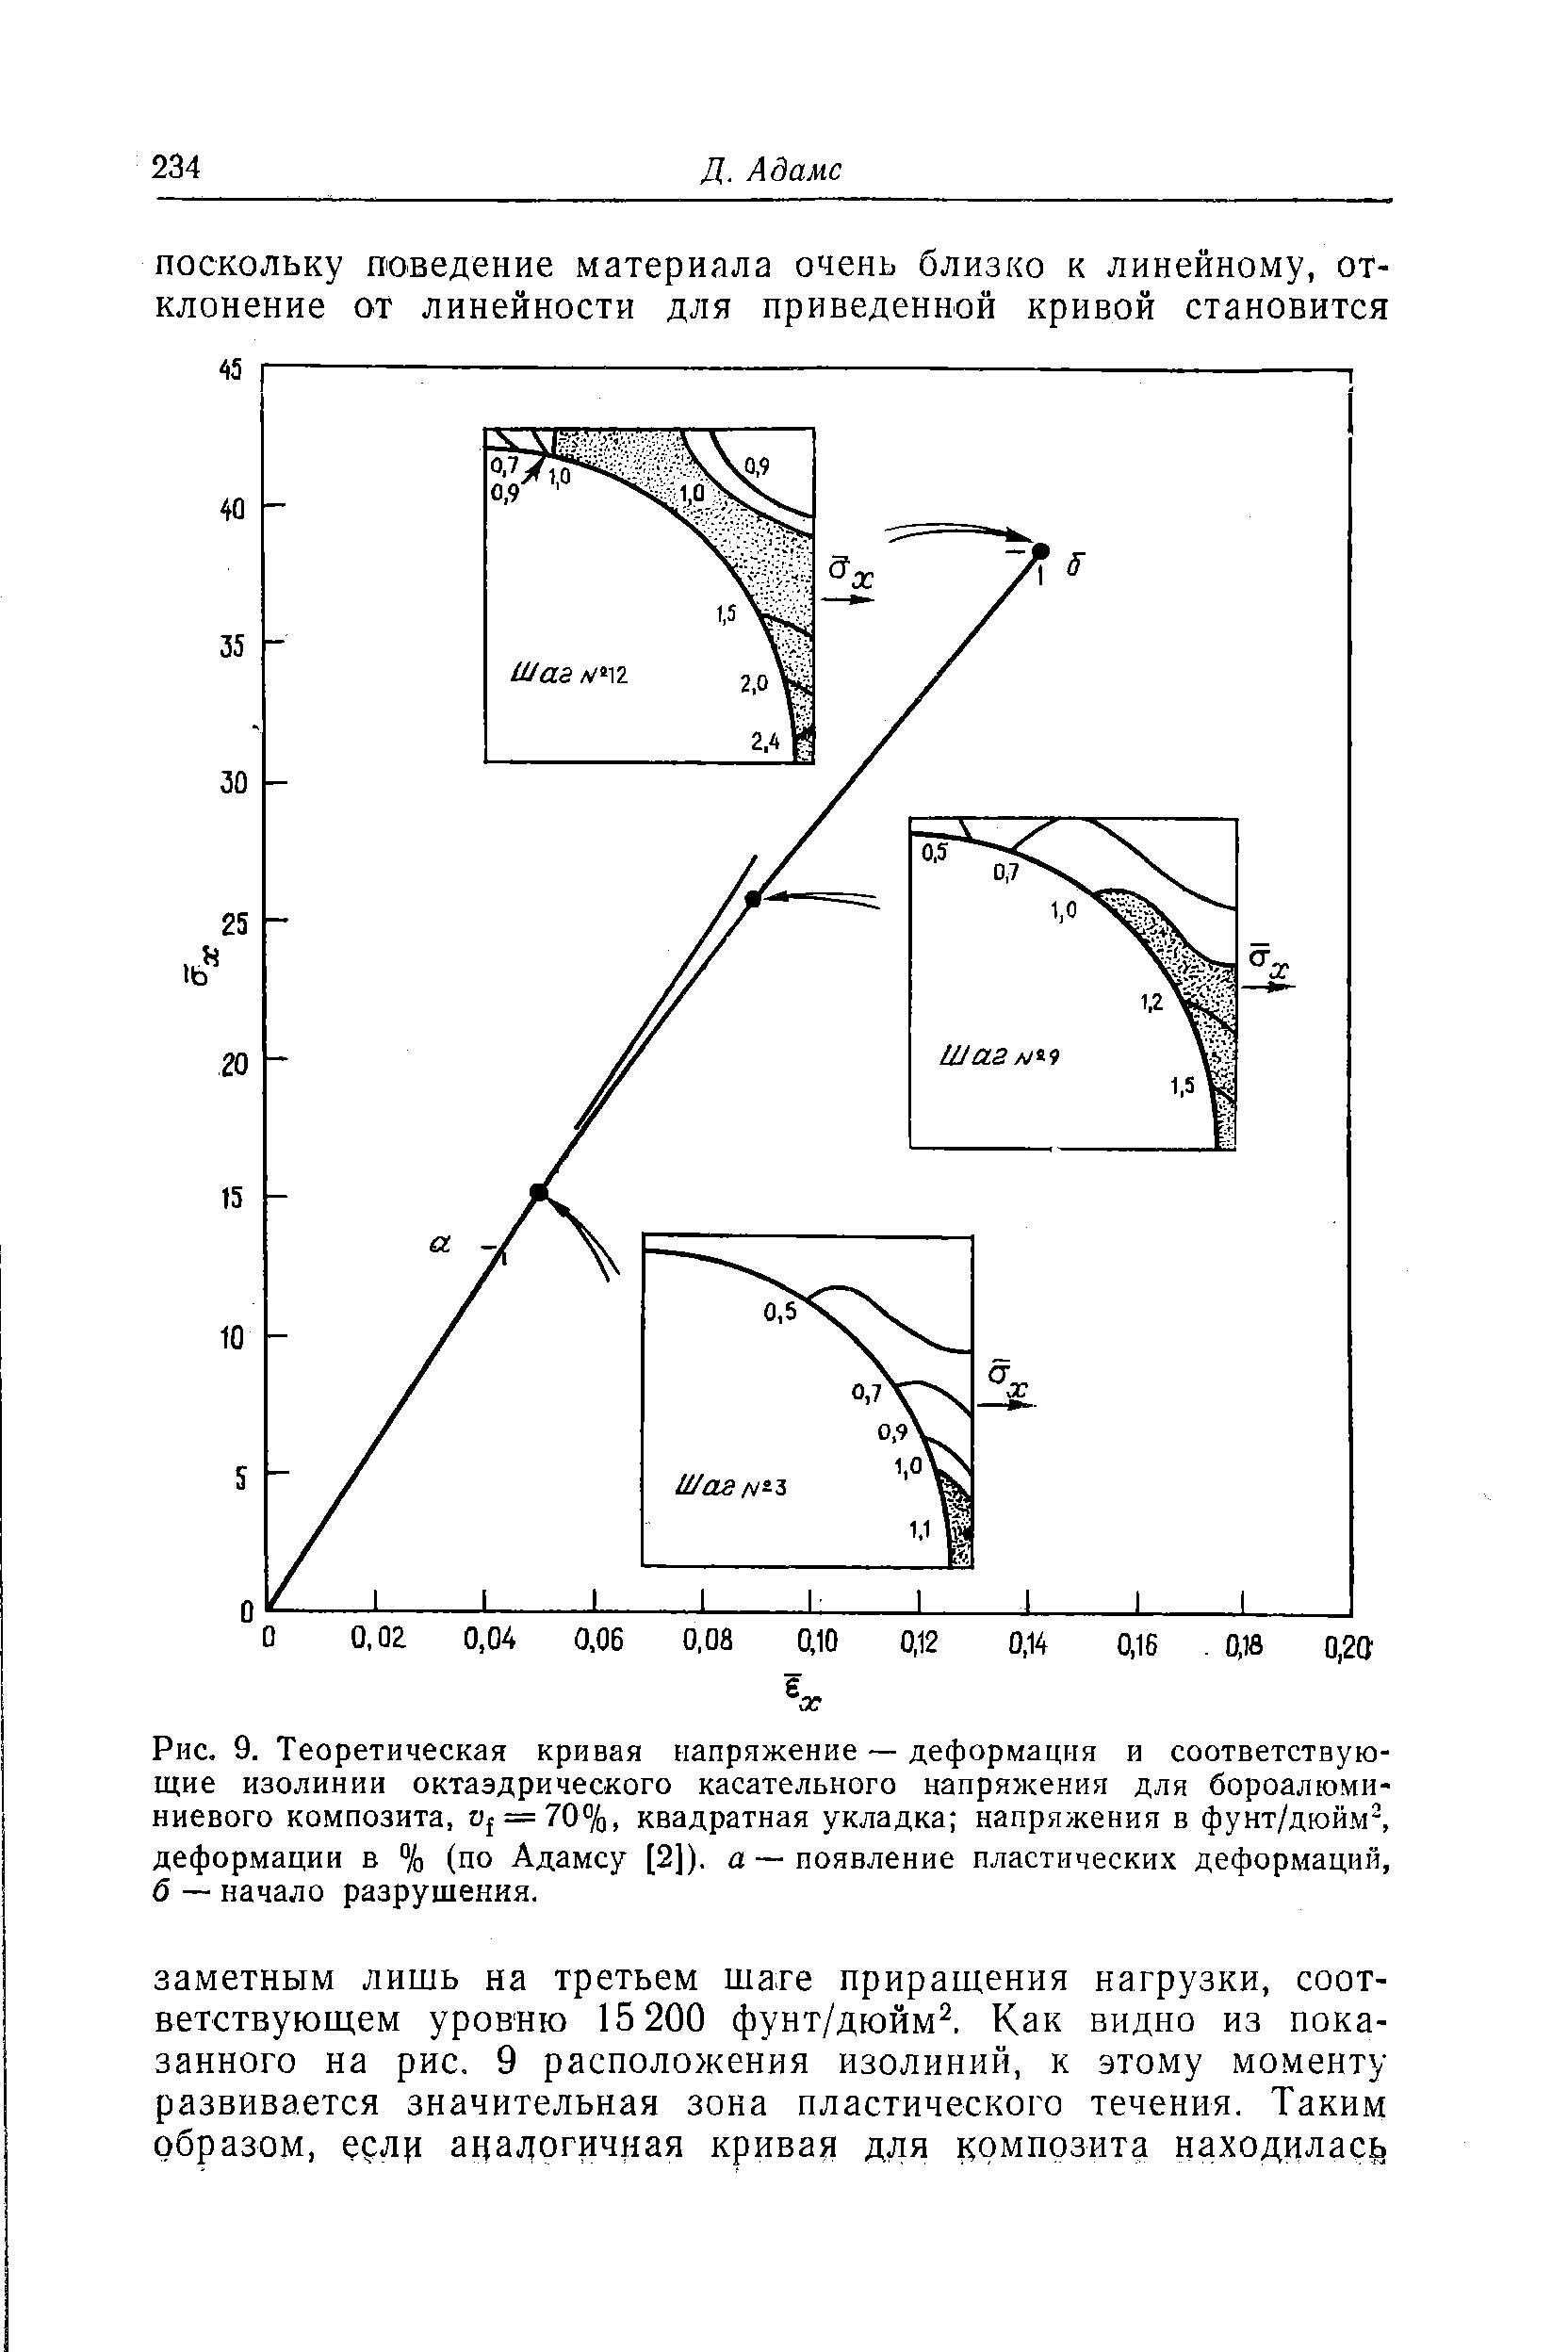 Рис. 9. Теоретическая кривая напряжение — деформация и соответствующие изолинии <a href="/info/113249">октаэдрического касательного напряжения</a> для бороалюминиевого композита, t)f = 70%, квадратная укладка напряжения в фунт/дюйм, деформации в % (по Адамсу [2]). а — появление <a href="/info/1487">пластических деформаций</a>, б — начало разрушения.
